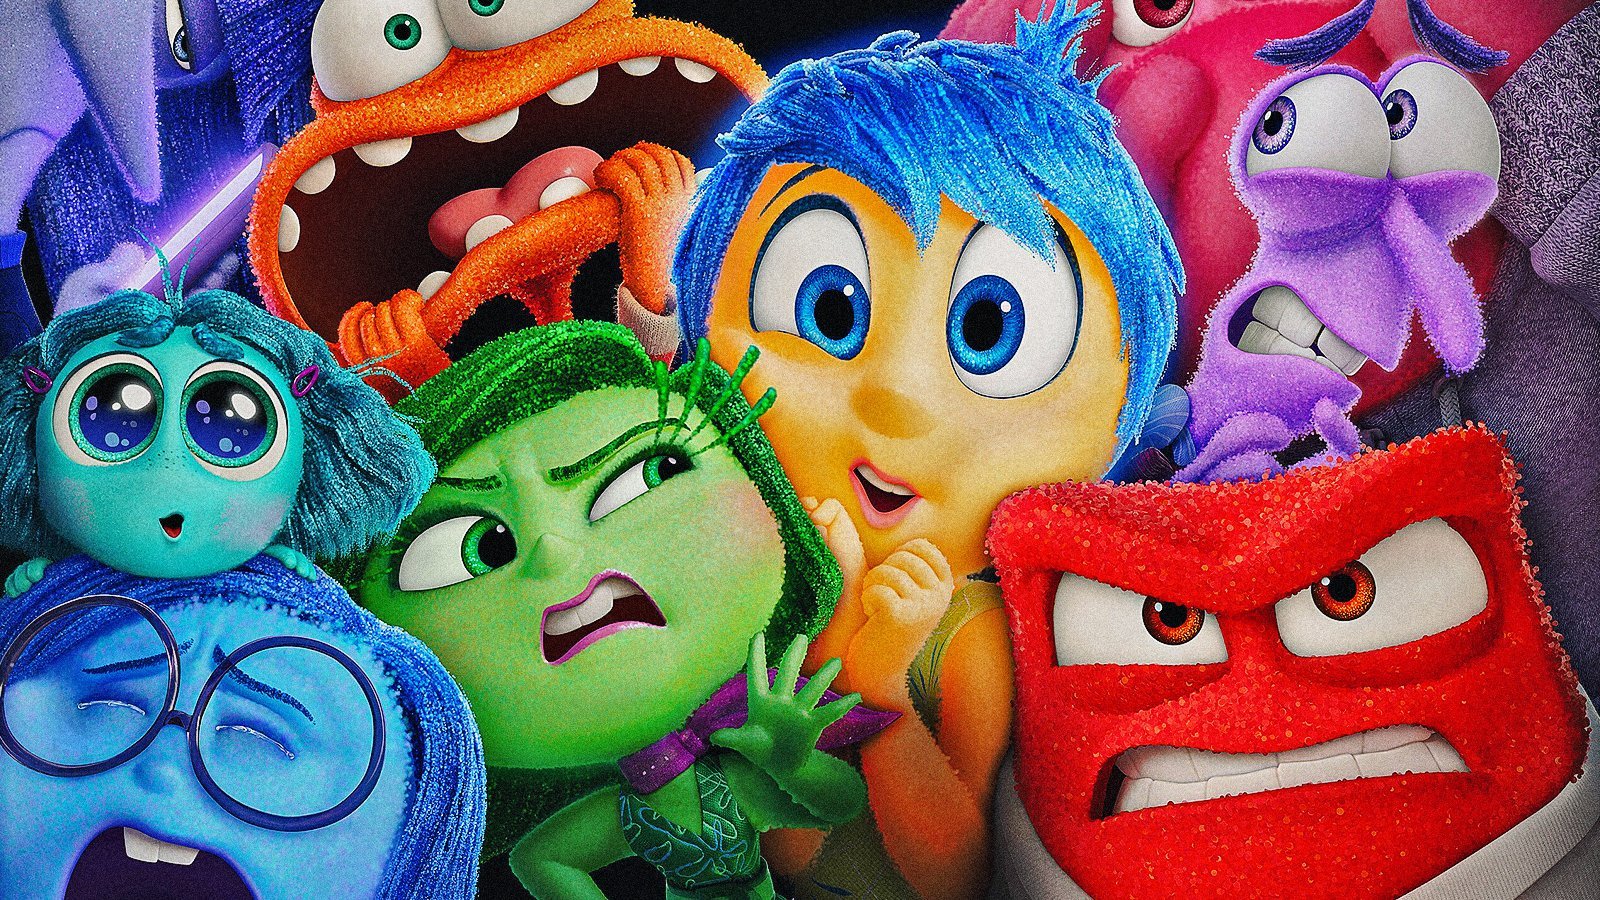 Le emozioni di Inside Out 2 in un'immagine del film Pixar